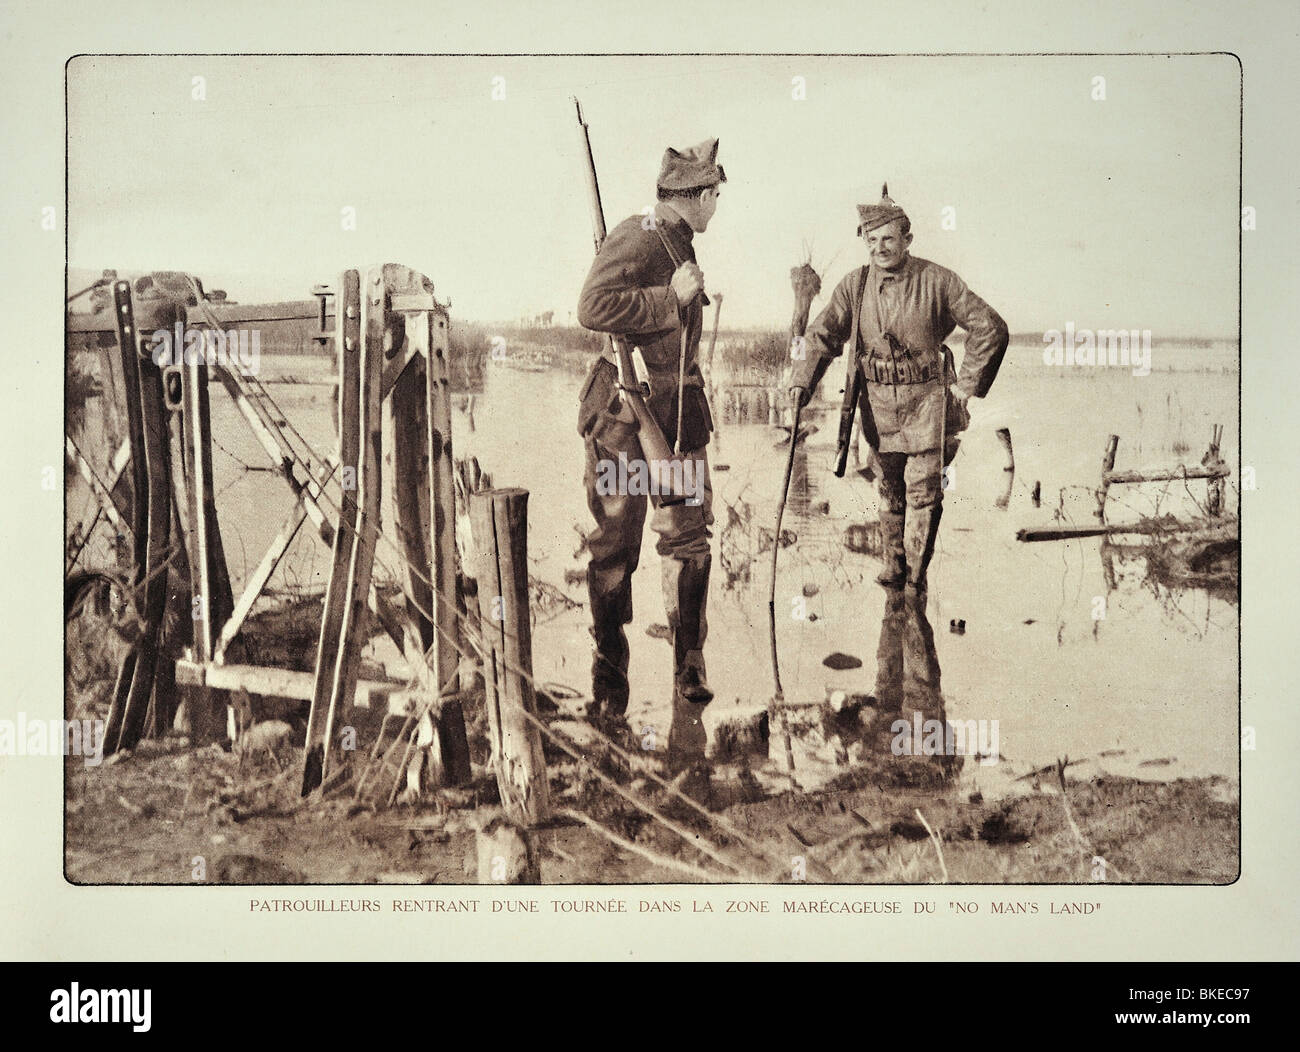 La PREMIÈRE GUERRE MONDIALE soldat belge de retour de patrouille de reconnaissance en terrain inondé en Flandre occidentale pendant la Première Guerre mondiale, la Belgique Banque D'Images